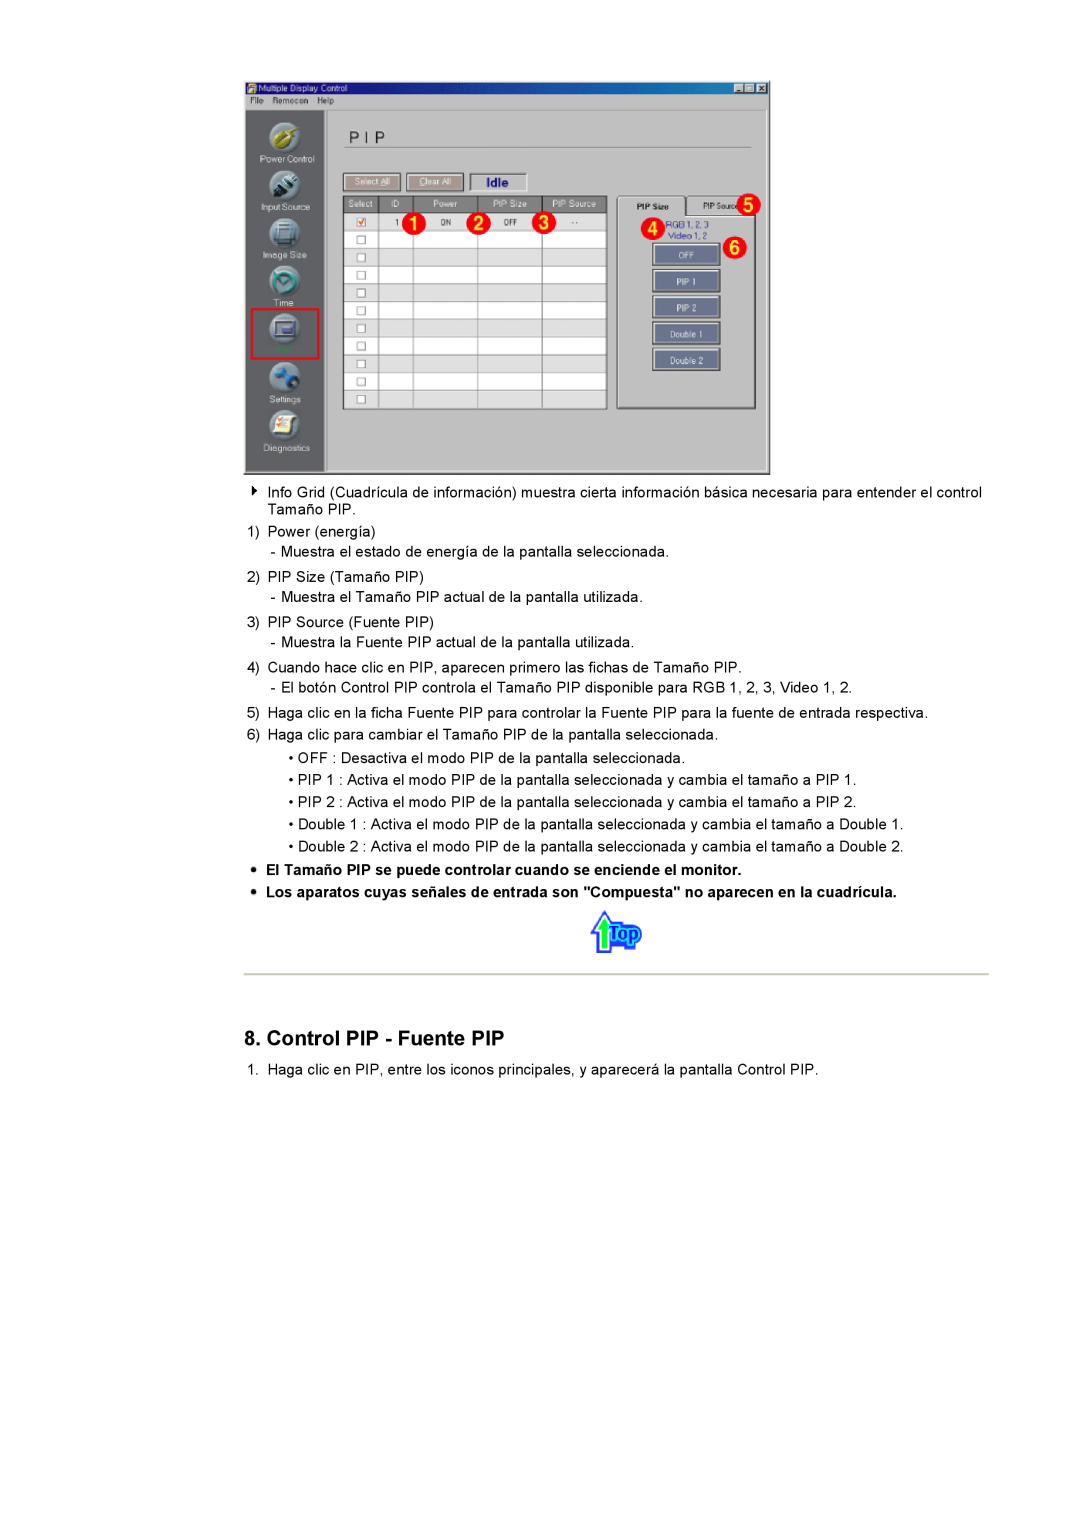 Samsung CK40PSNS/EDC manual Control PIP - Fuente PIP, El Tamaño PIP se puede controlar cuando se enciende el monitor 